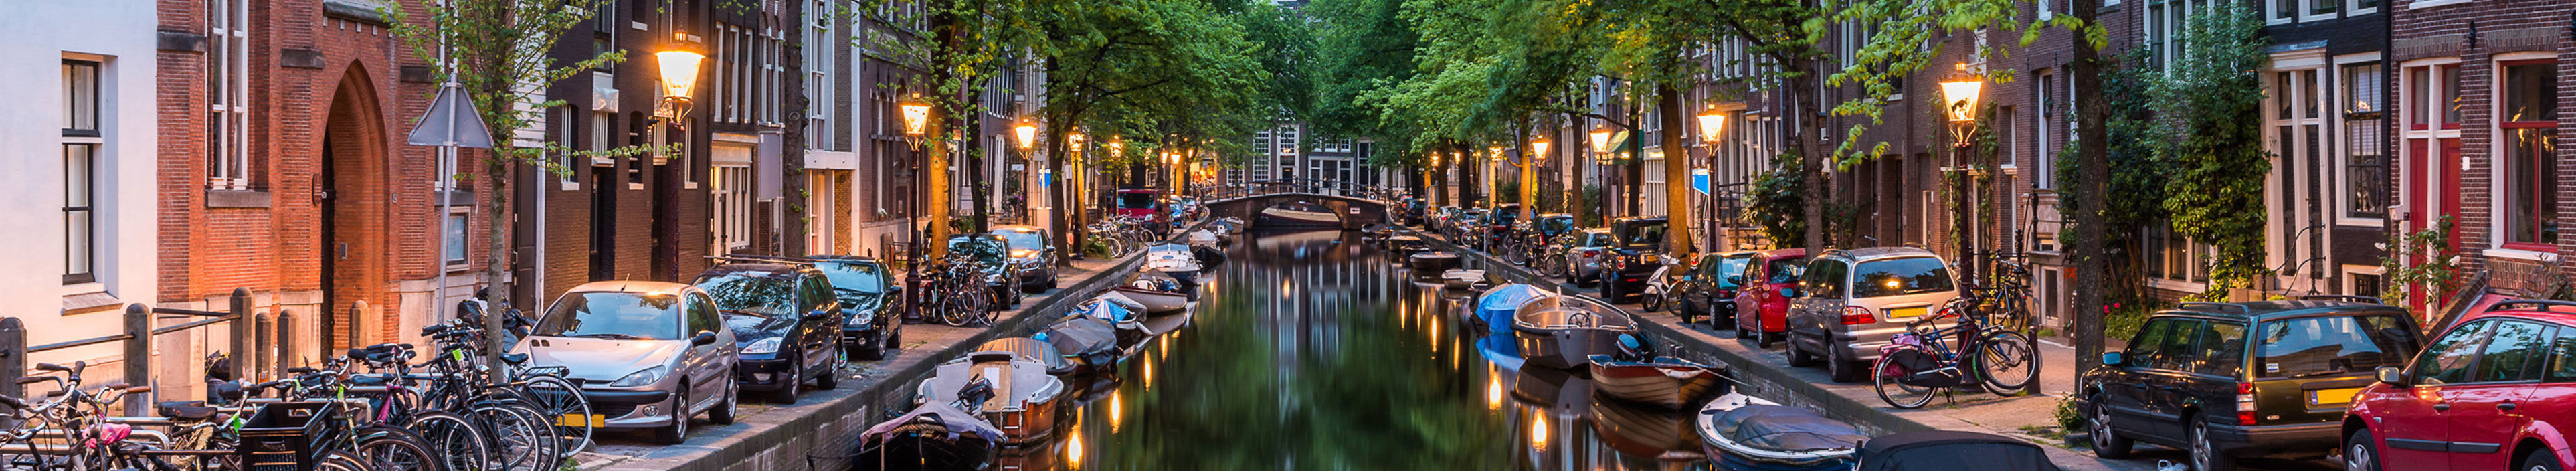 Amsterdam Stadt, beleuchtetes Gebäude und Kanal bei Nacht, Niederlande